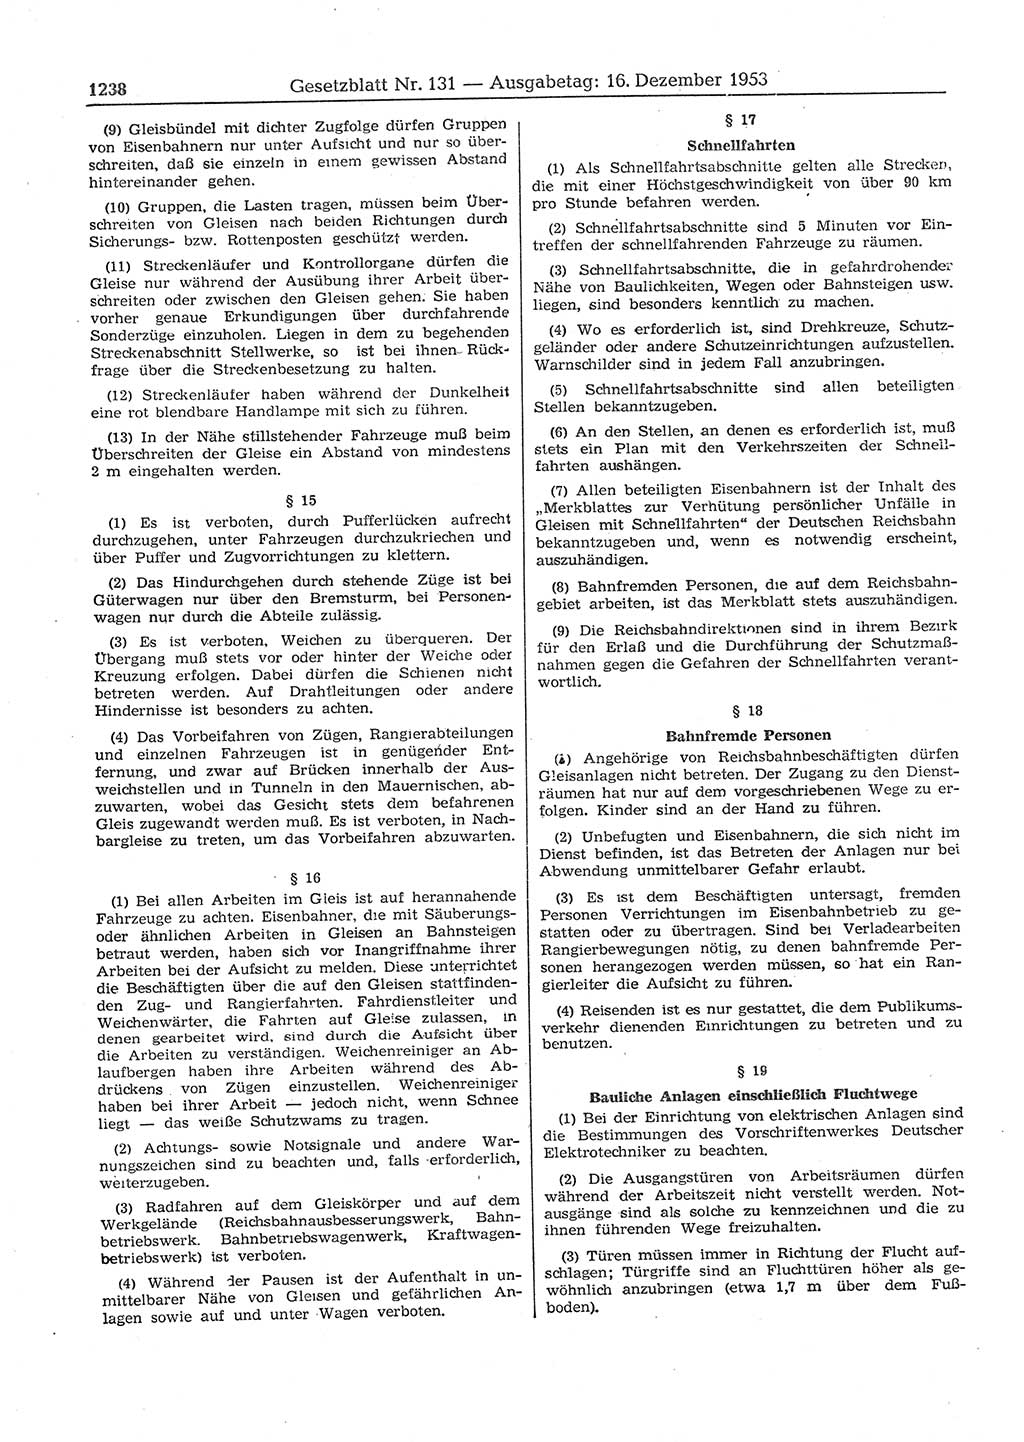 Gesetzblatt (GBl.) der Deutschen Demokratischen Republik (DDR) 1953, Seite 1238 (GBl. DDR 1953, S. 1238)